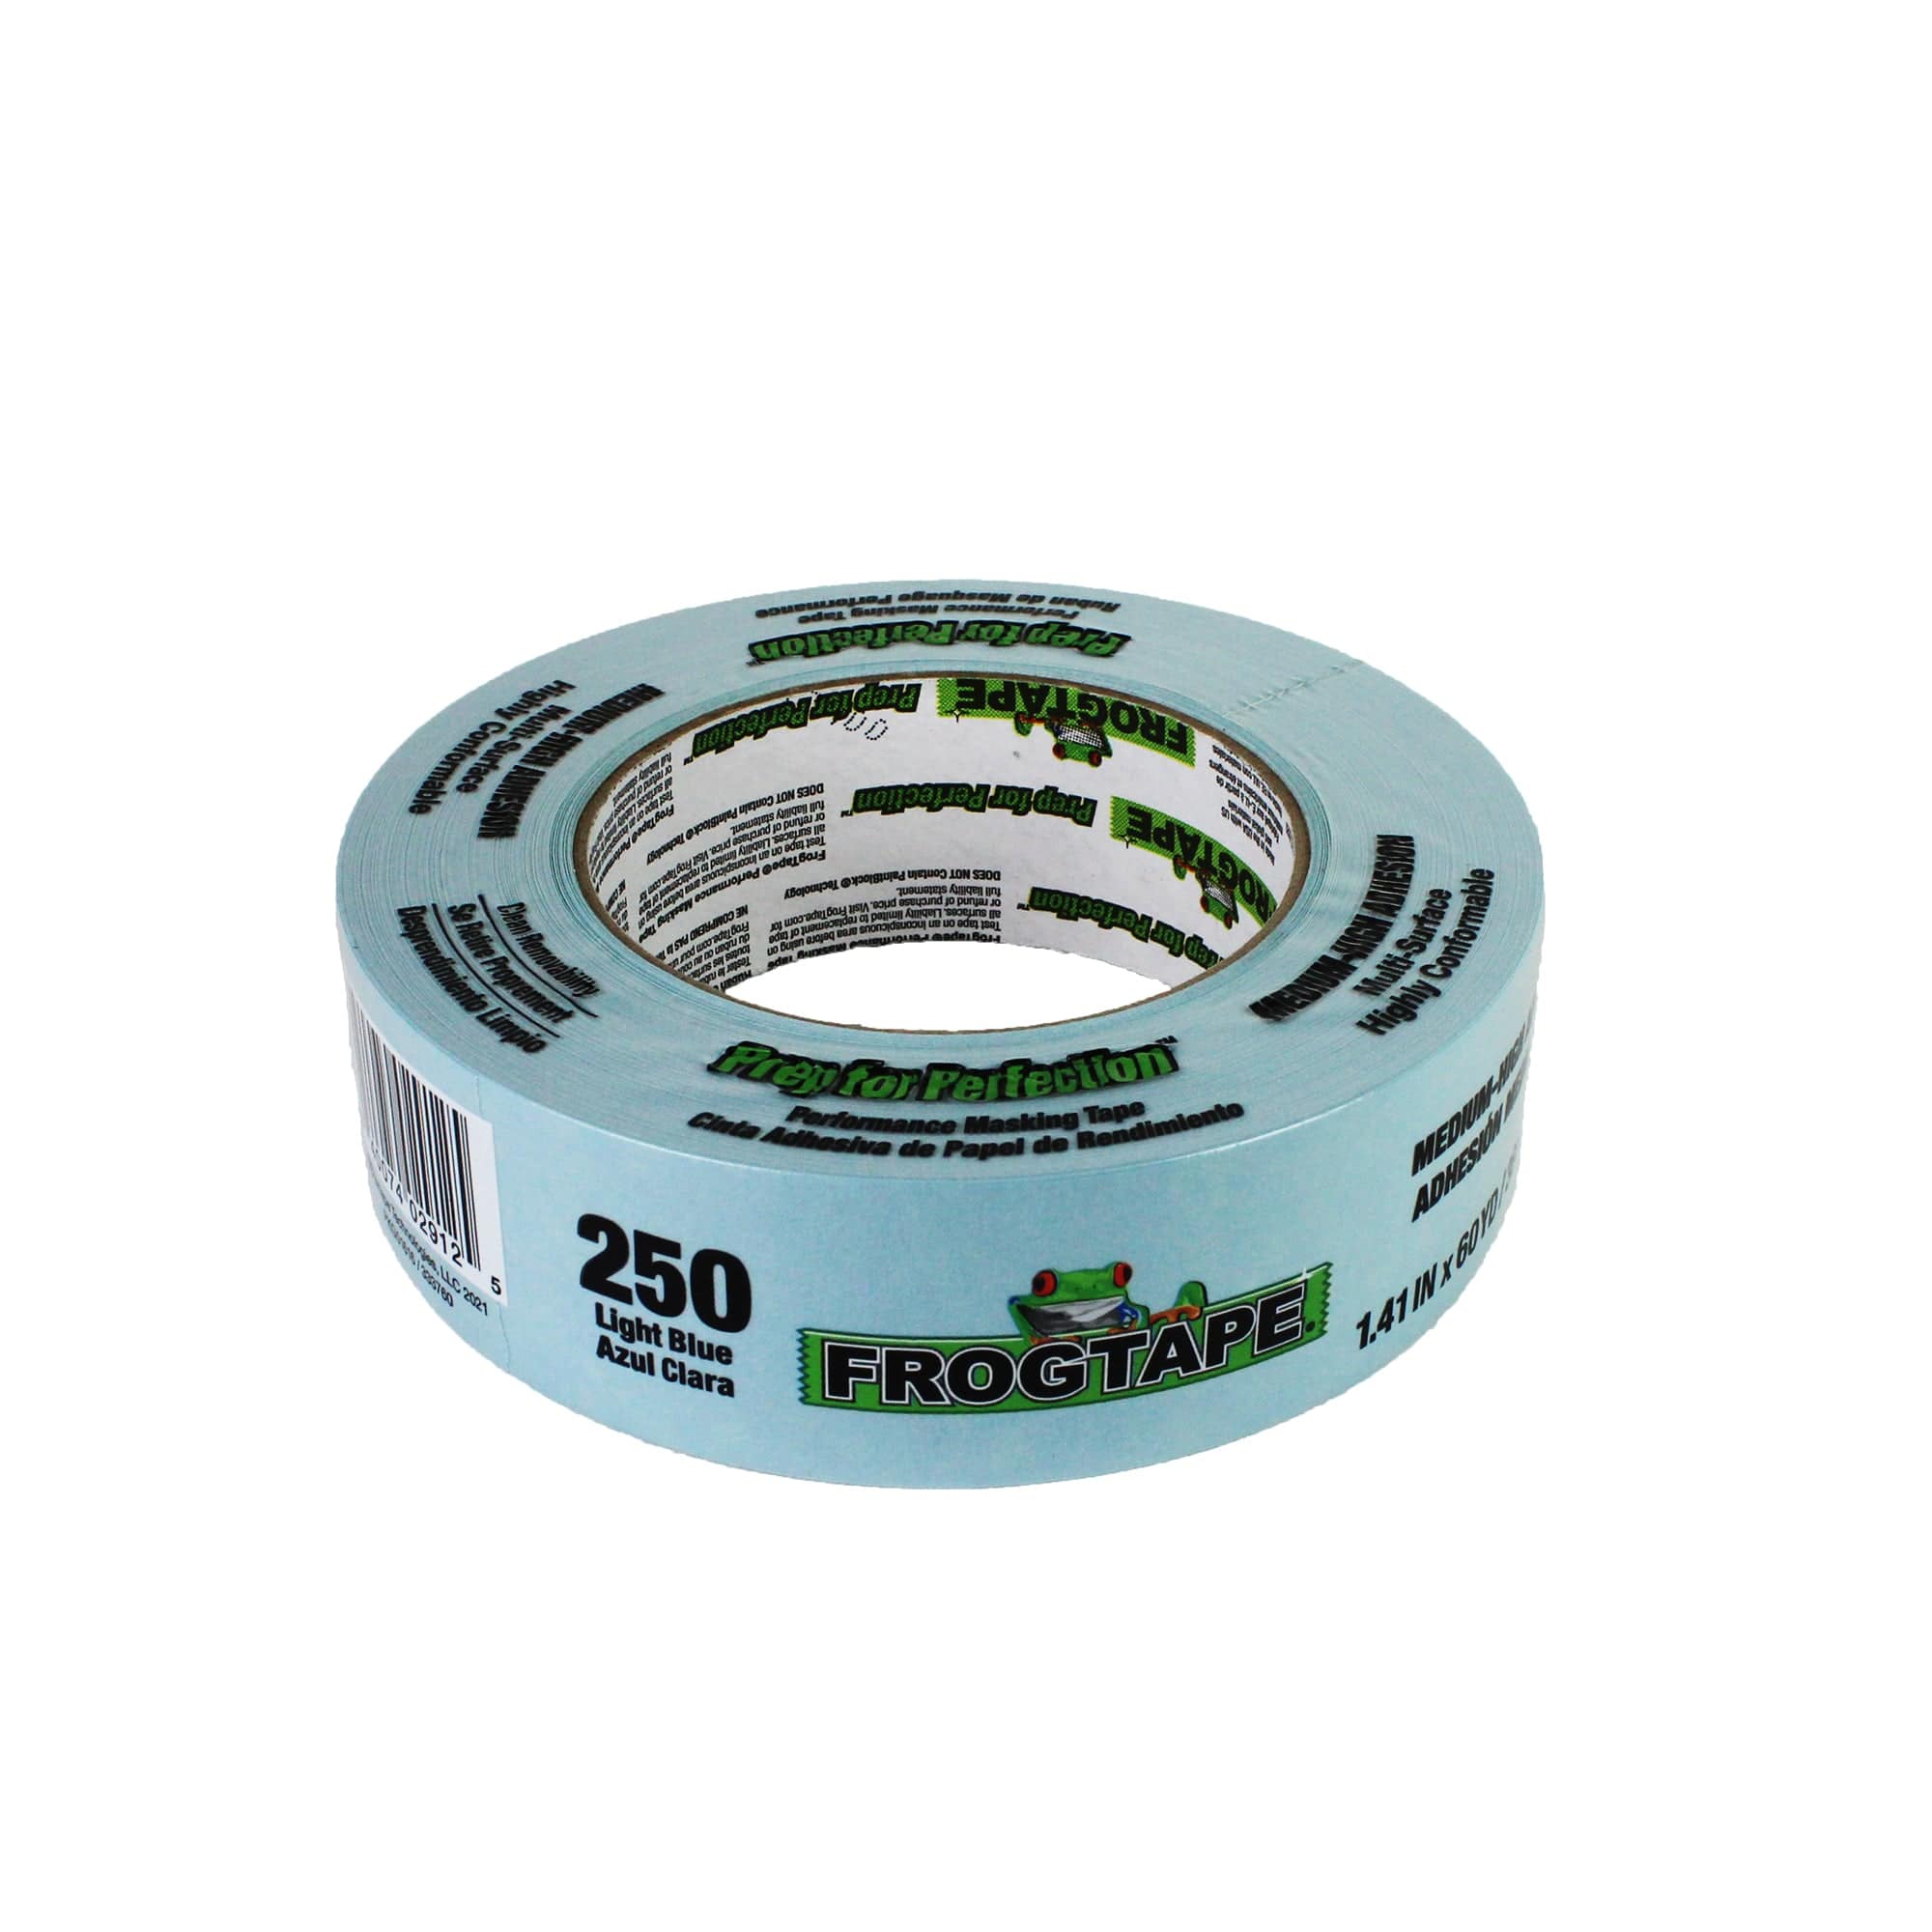 Shurtape Frog Tape 250 Light Blue Masking Tape, 72 mm Width x 55 m Length